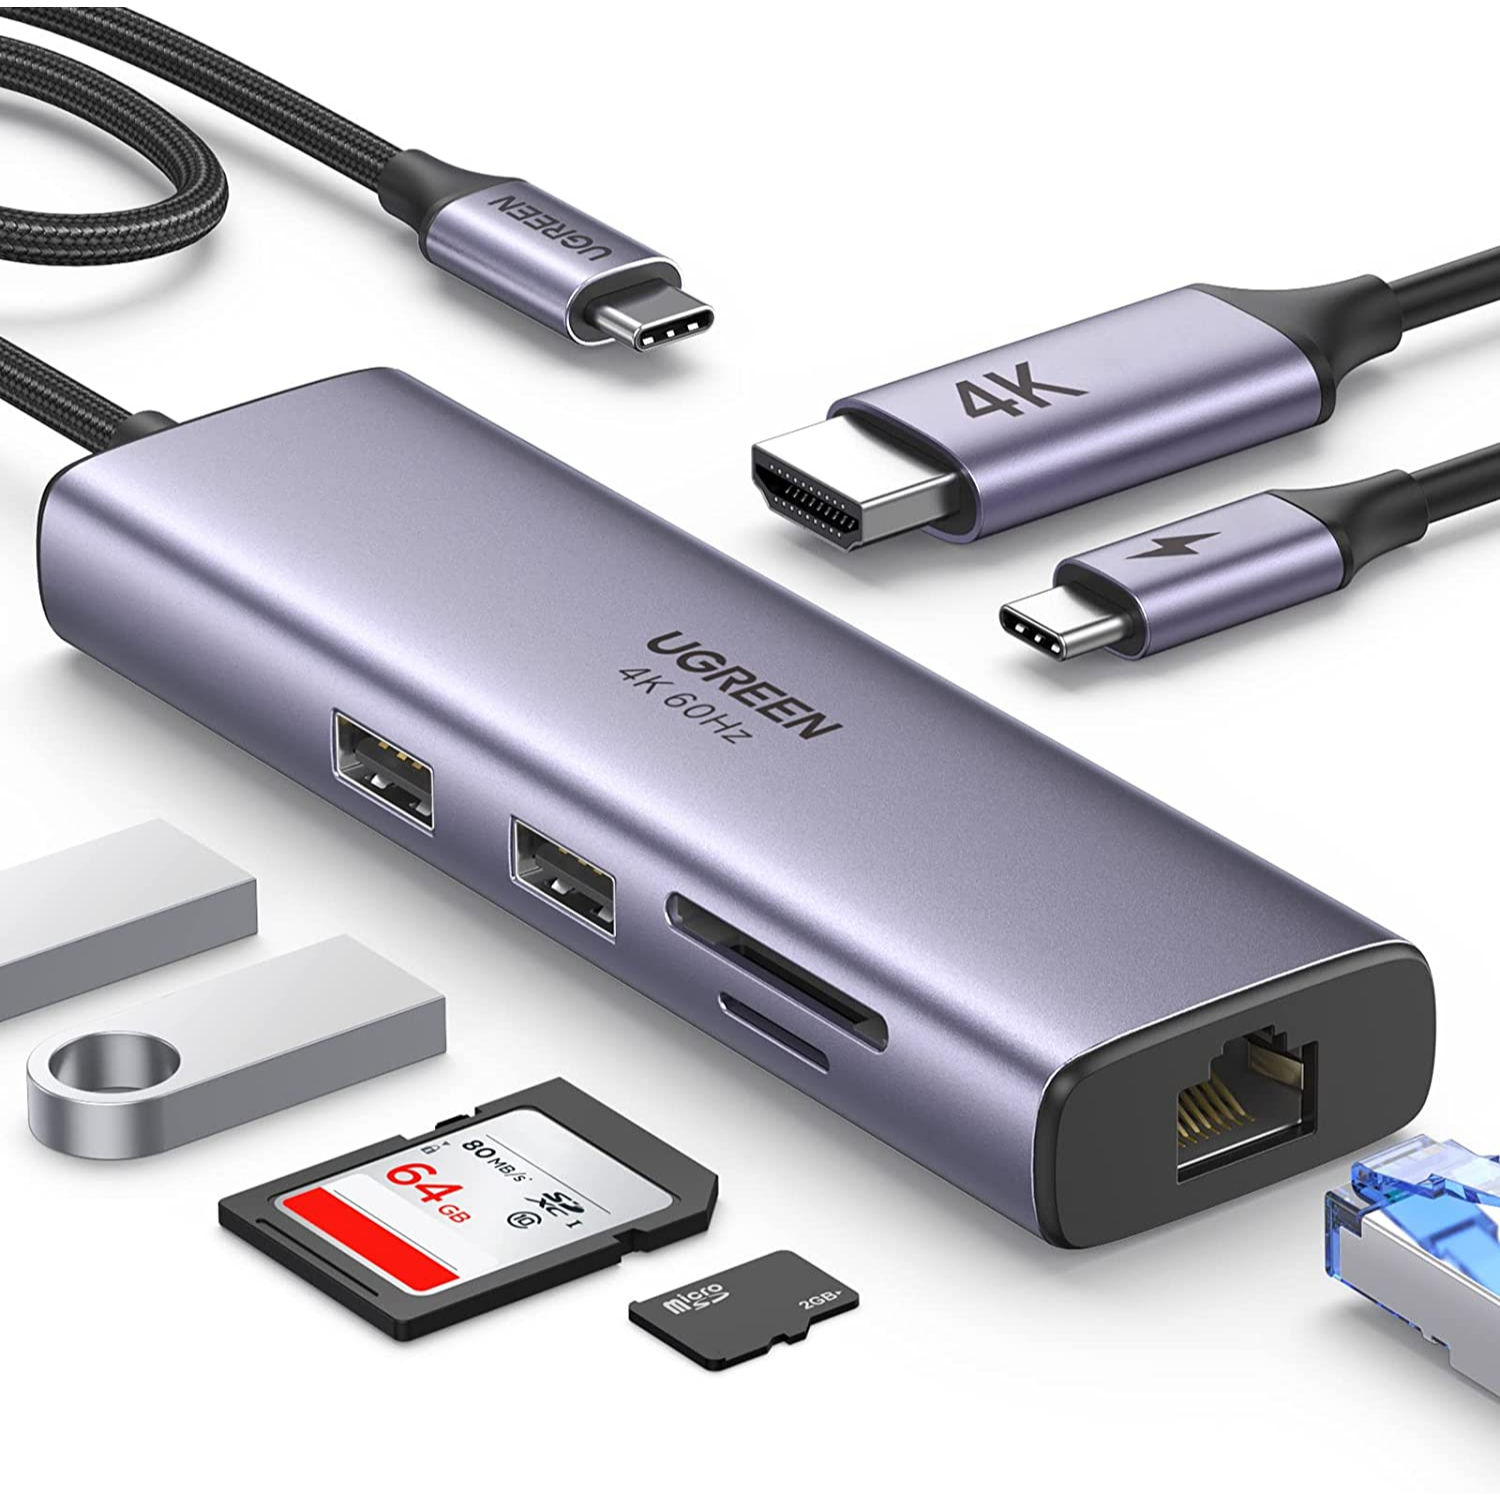 UGREEN Adaptador Multipuerto 7 en 1 HUB USB-C con puerto Ethernet, HDMI 4K a 60Hz, 100W PD, lector de tarjetas SD/TF, 2 puertos USB 3.0, compatible con Mac M1, M2, iPad, Steam Deck